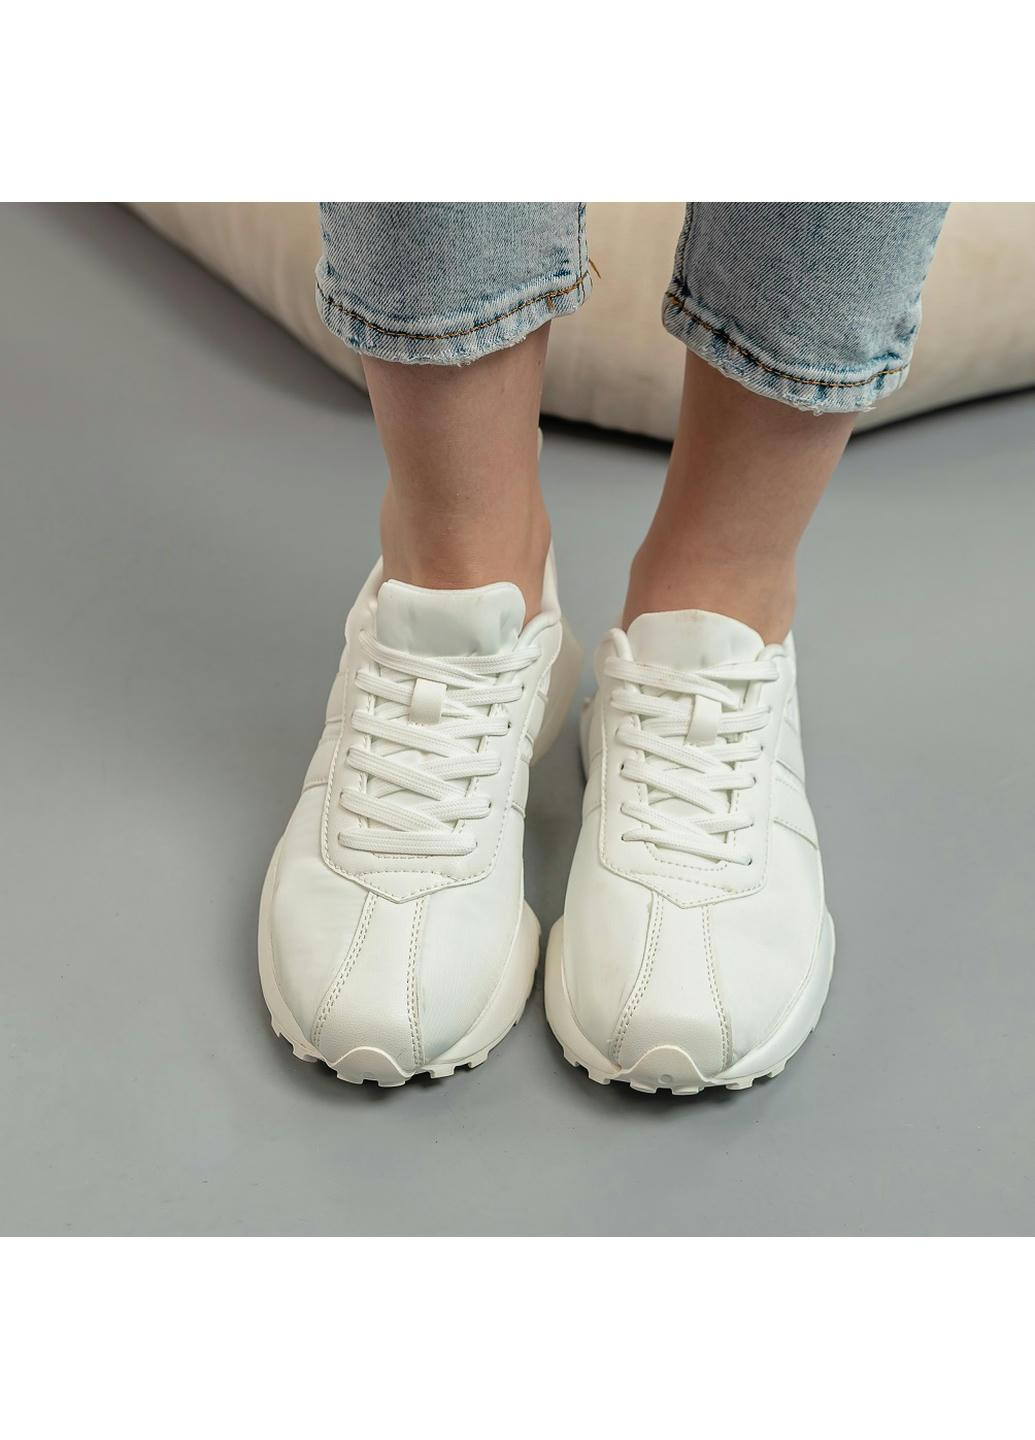 Белые демисезонные кроссовки женские sophia 3941 235 белый Fashion